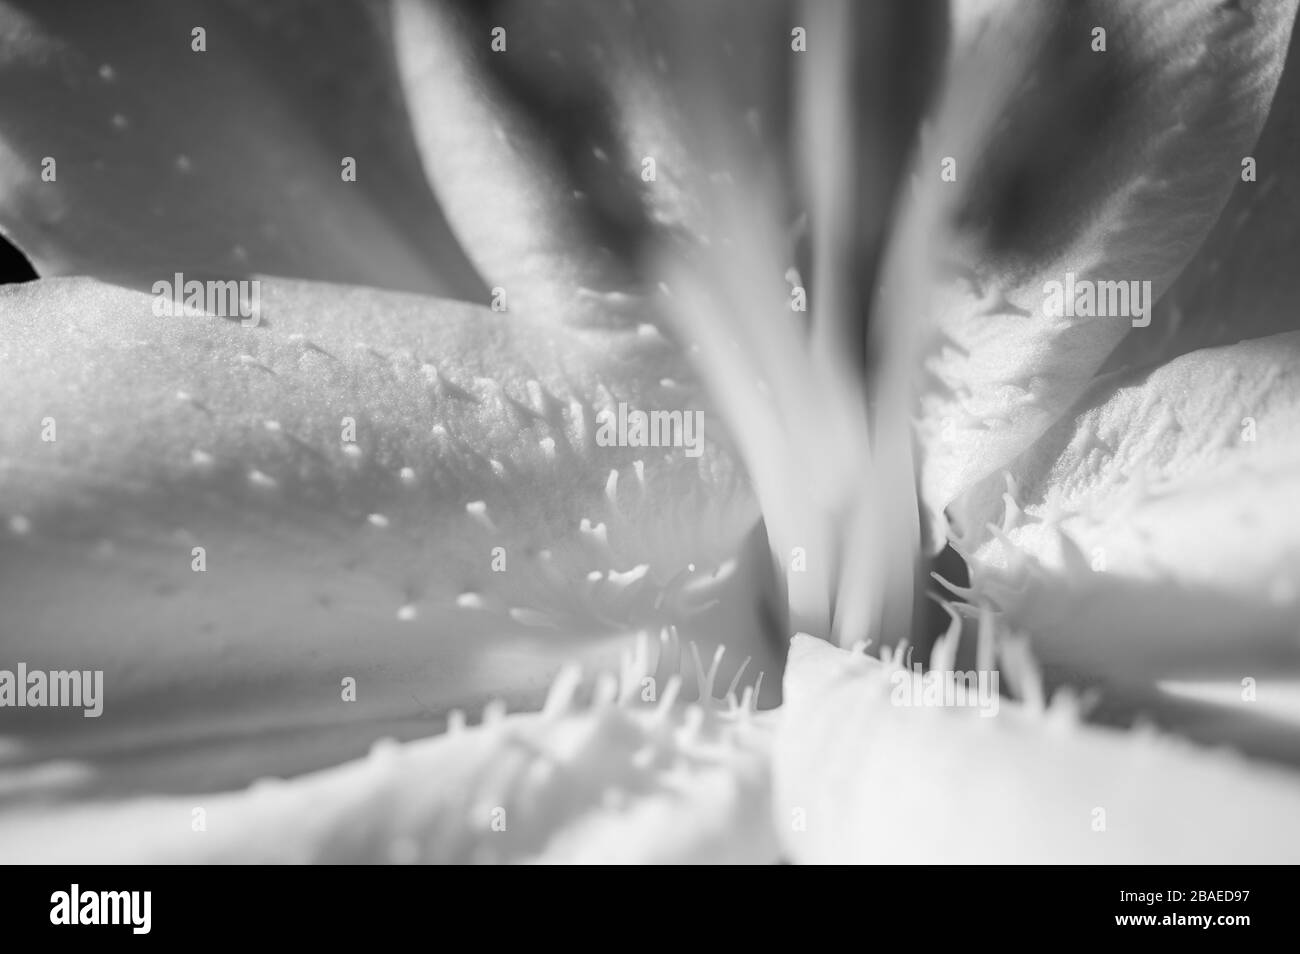 Gros plan abstrait noir et blanc des pétales et filaments d'une fleur de lys blanche avec une profondeur de champ très étroite. Banque D'Images